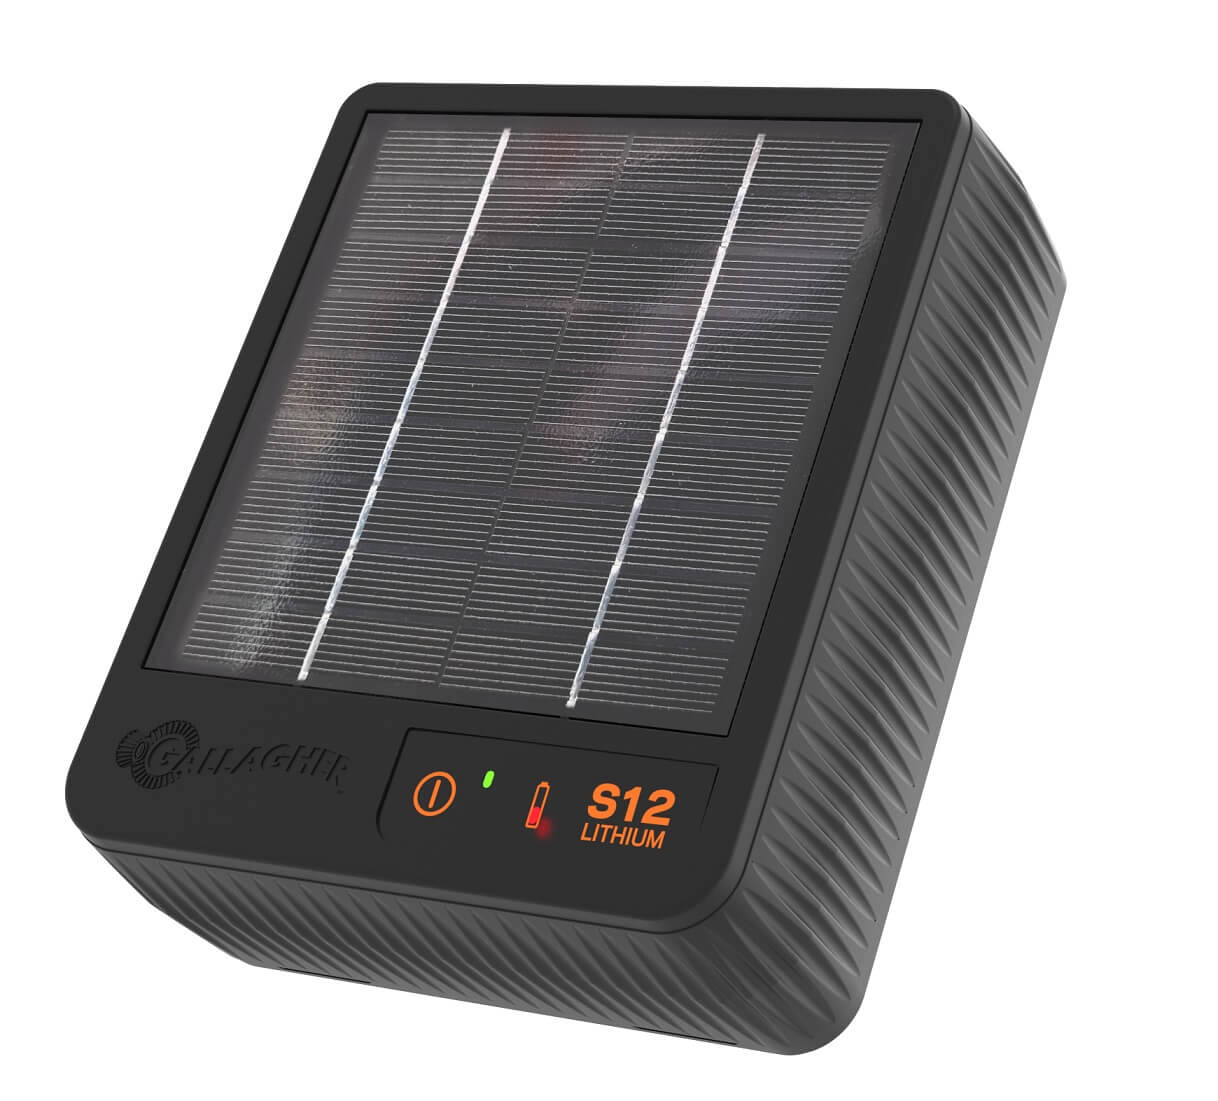 GALLAGHER Solar-Weidezaungerät S12 inkl. Akku